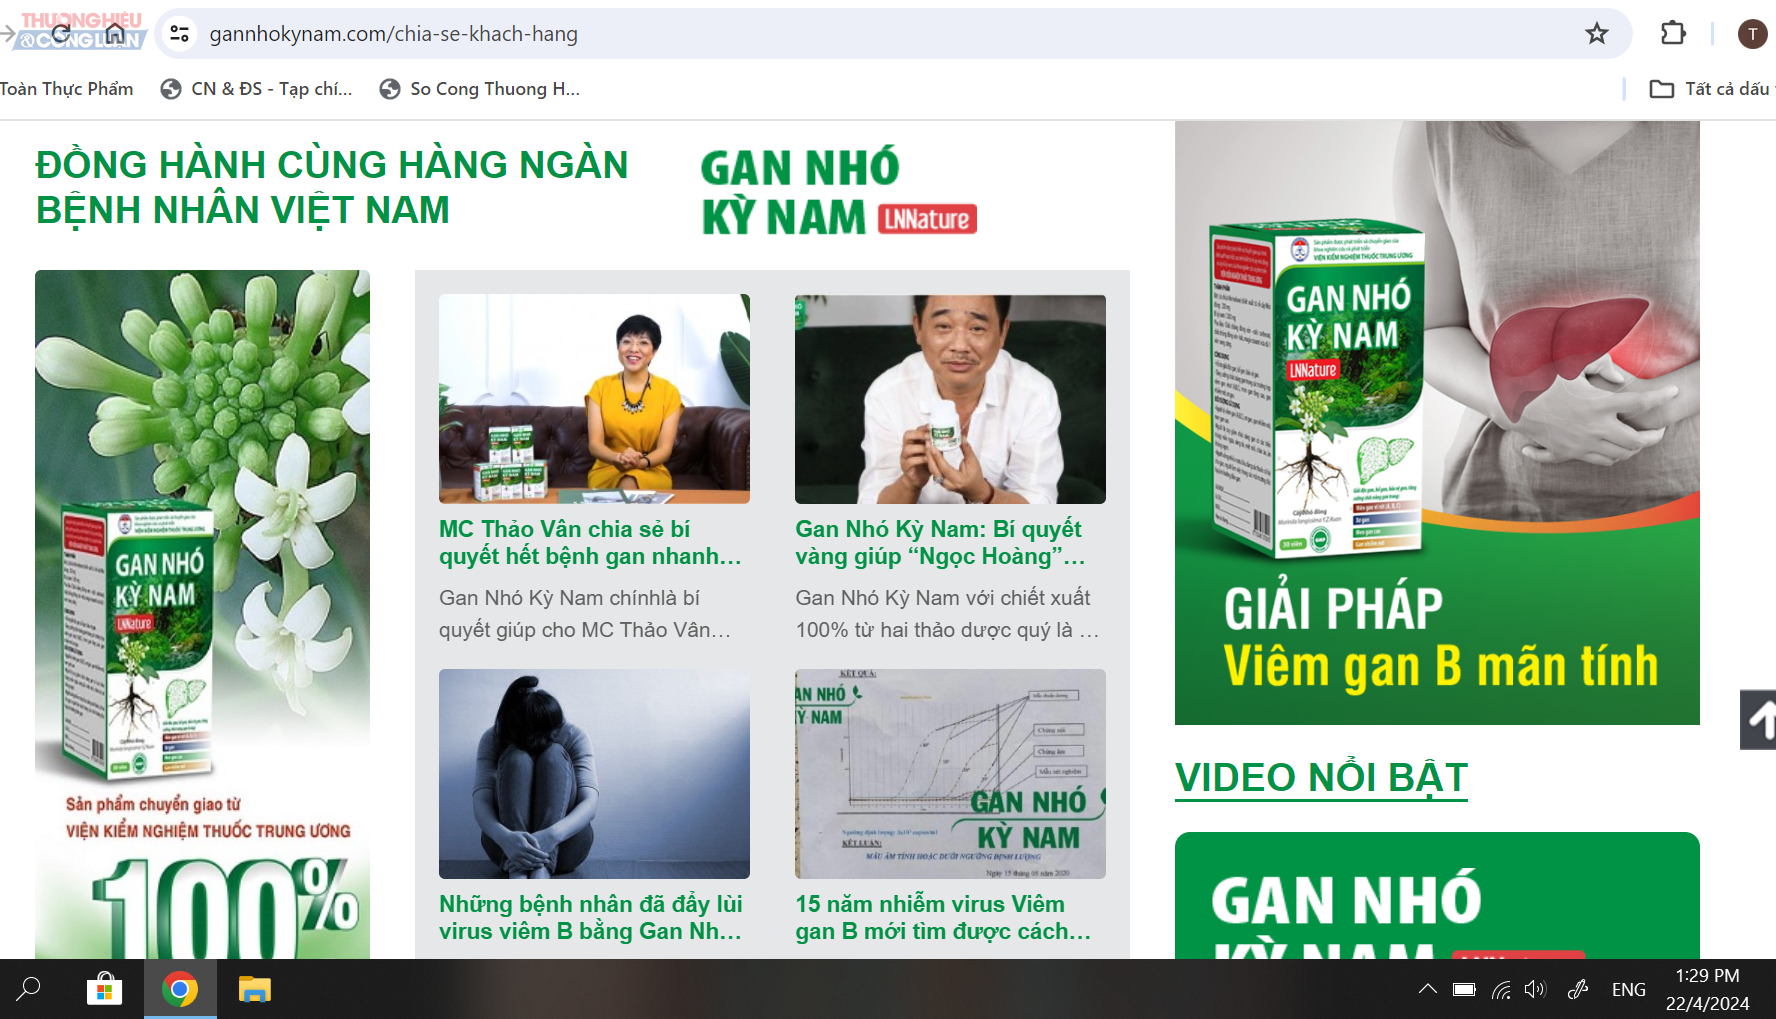 Website: gannhokynam.com quảng cáo sử dụng từ ngữ gây hiểu nhầm TPBVSK Gan nhó kỳ nam LNNature là thuốc chữa bệnh